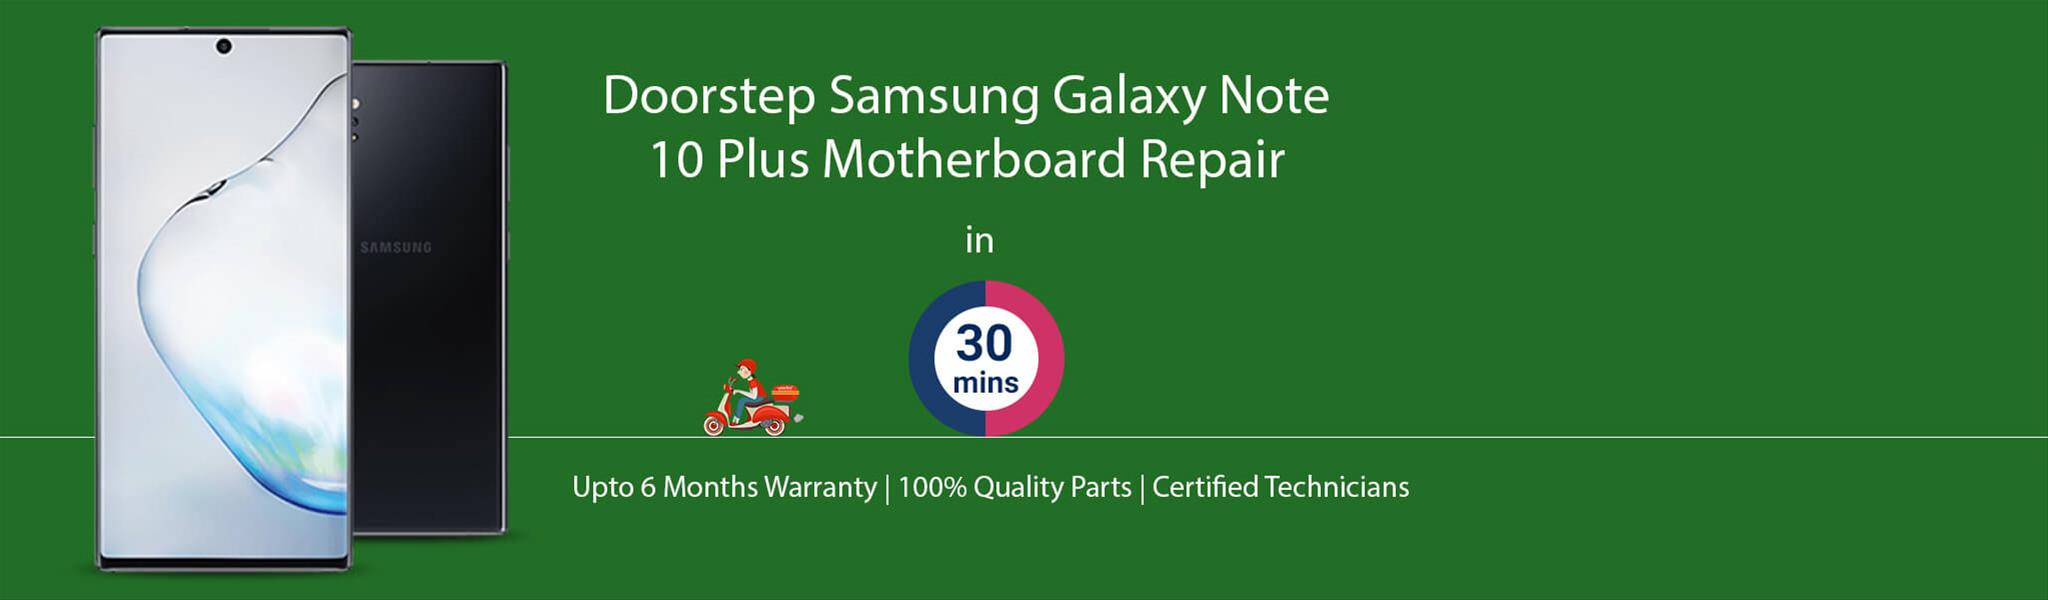 samsung-galaxy-note-10-plus-motherboard-repair.jpg